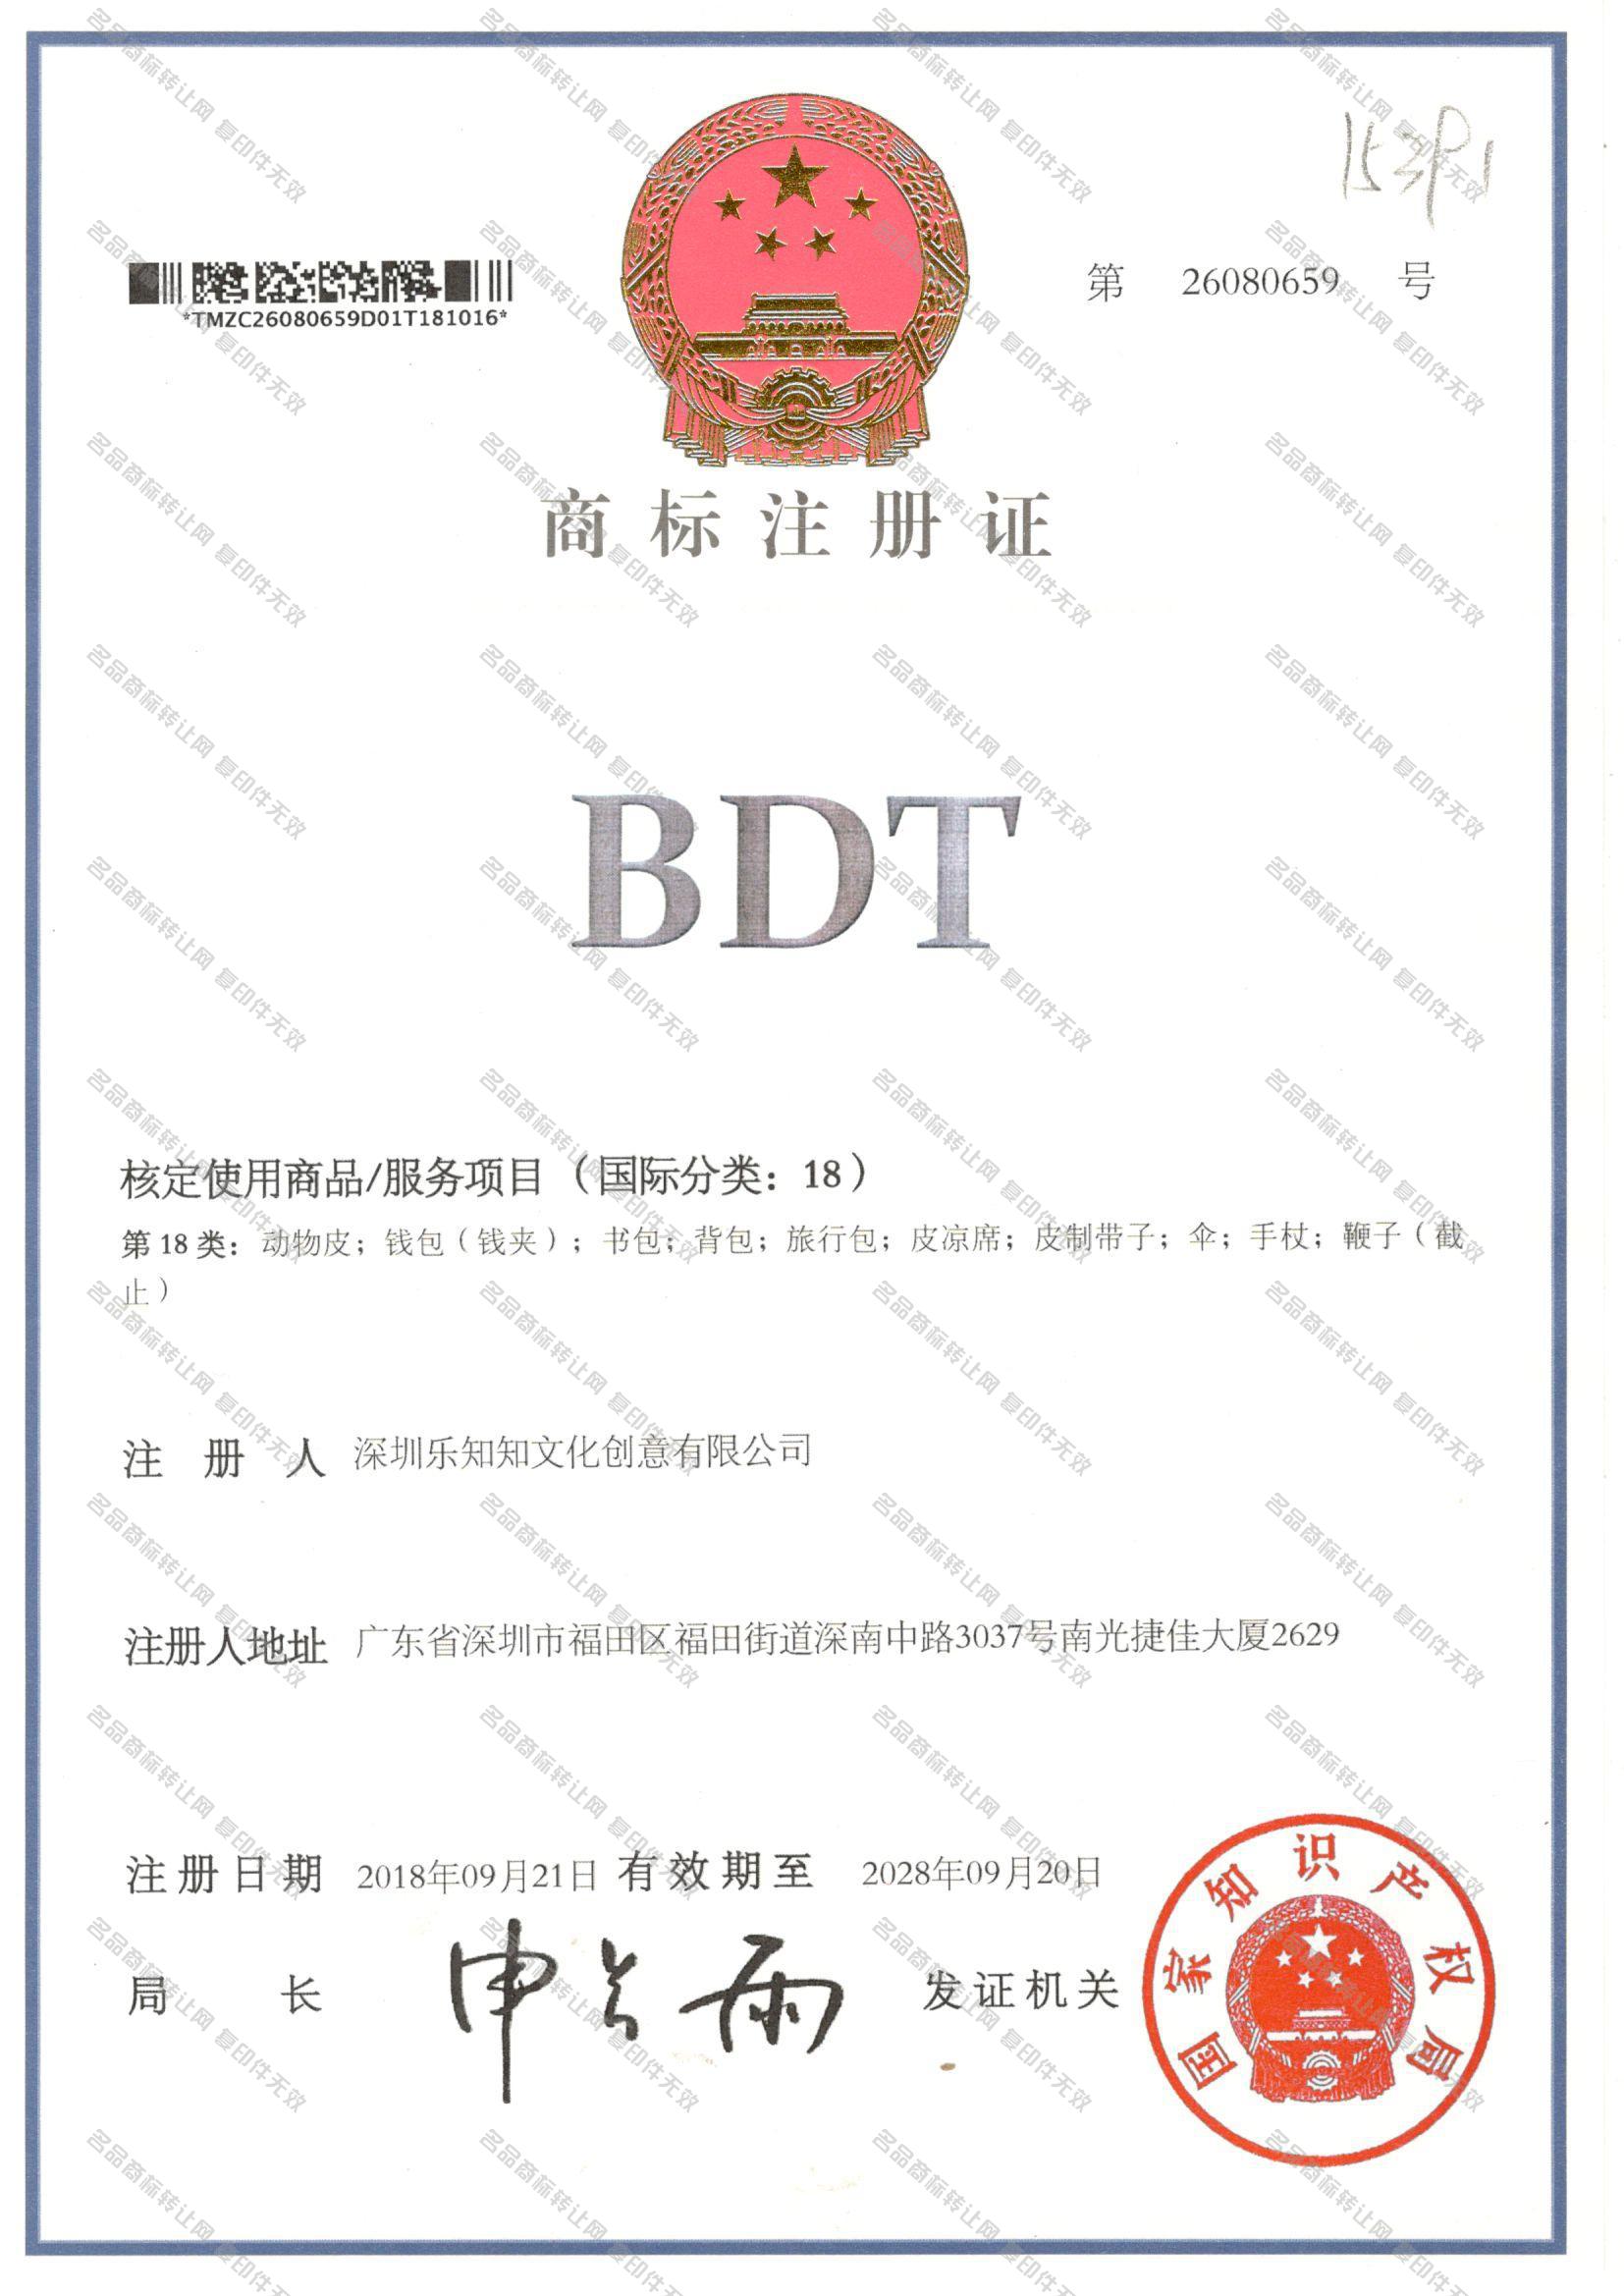 BDT注册证